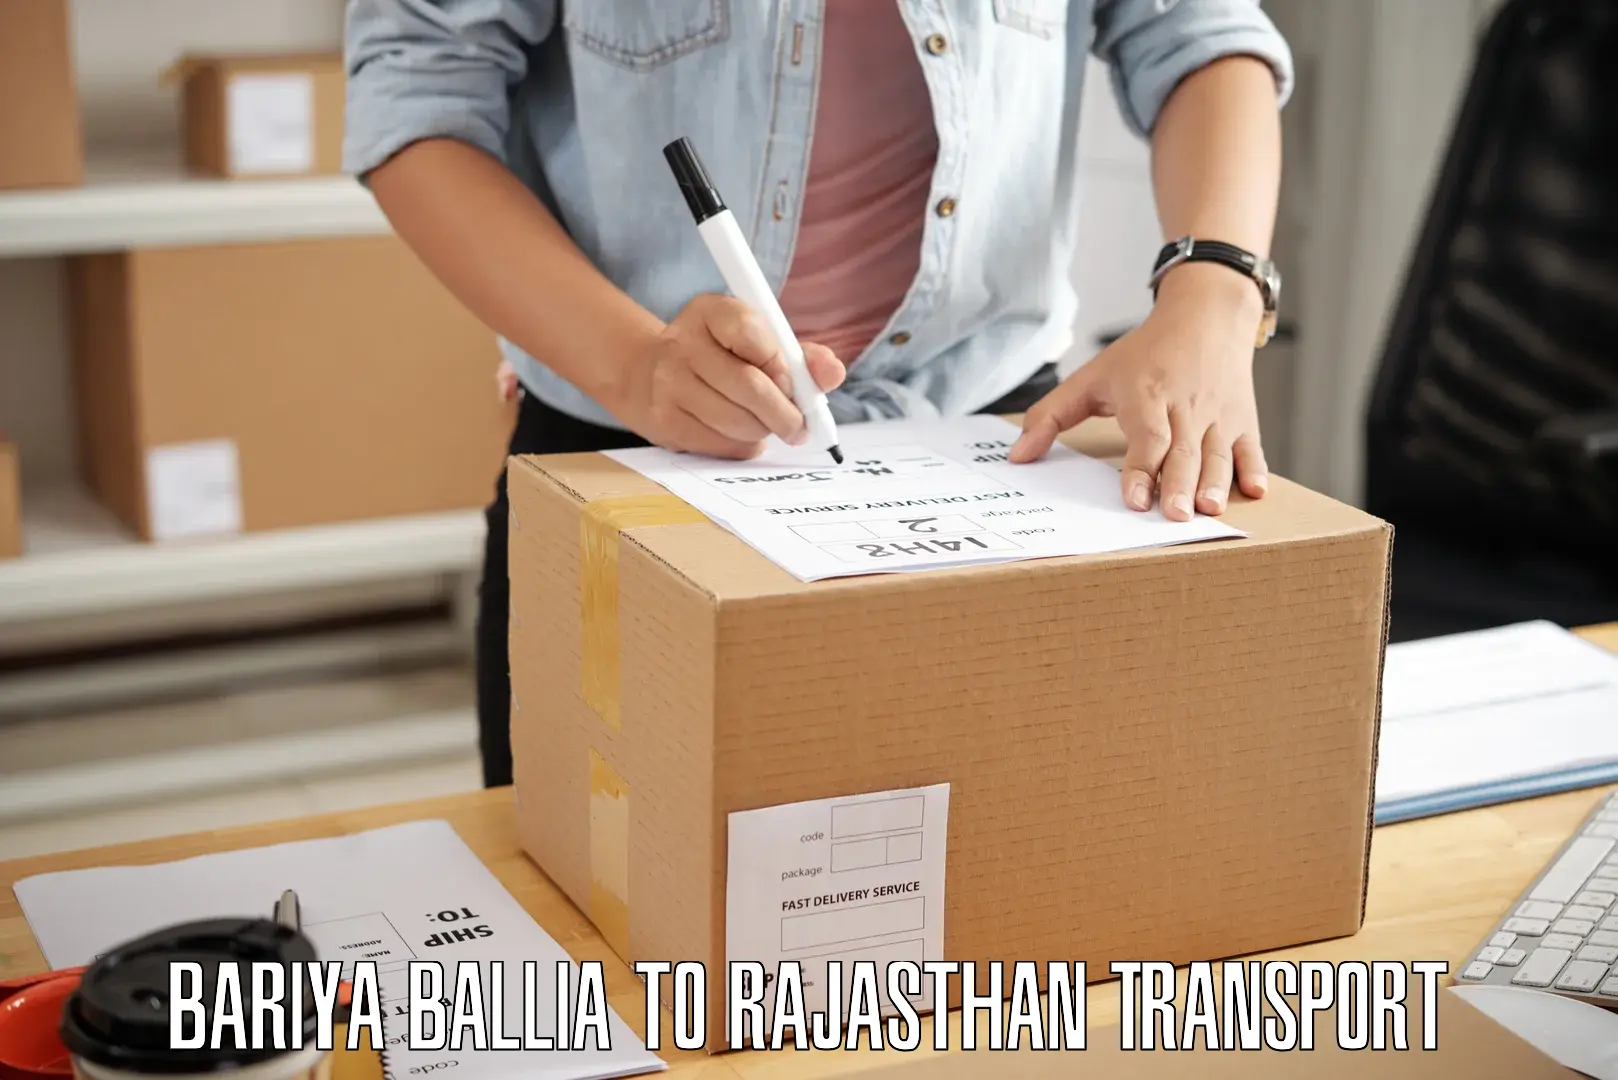 Express transport services Bariya Ballia to Shahpura Jaipur